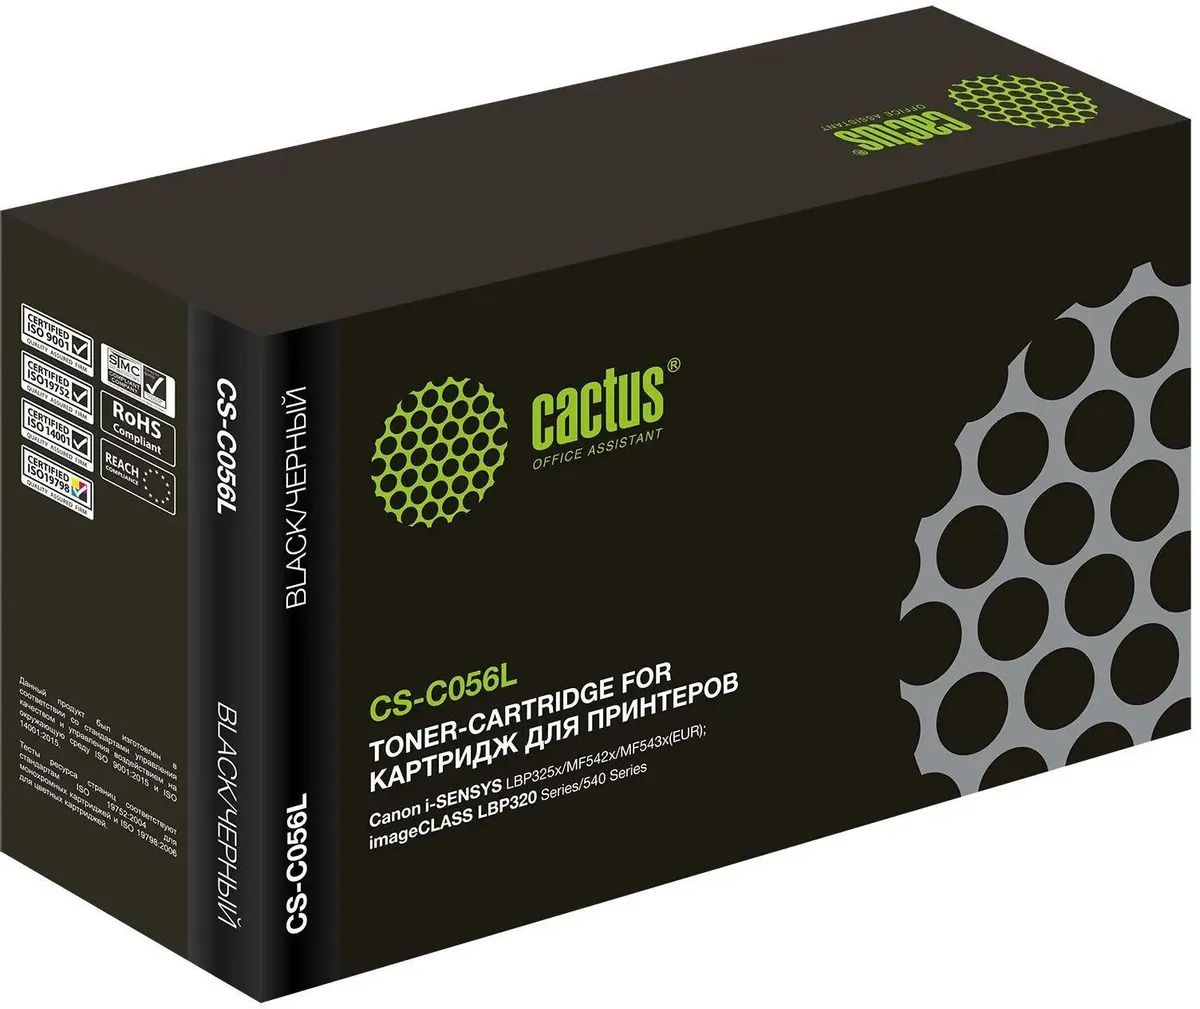 Картридж лазерный Cactus CS-C056L 056 L черный (5100стр.) для Canon imageCLASS LBP320 Series/540 Series cactus ep 27 картридж cs ep27s для lbp3200 mf3220 series laserbase mf3110 3200 5600 5700